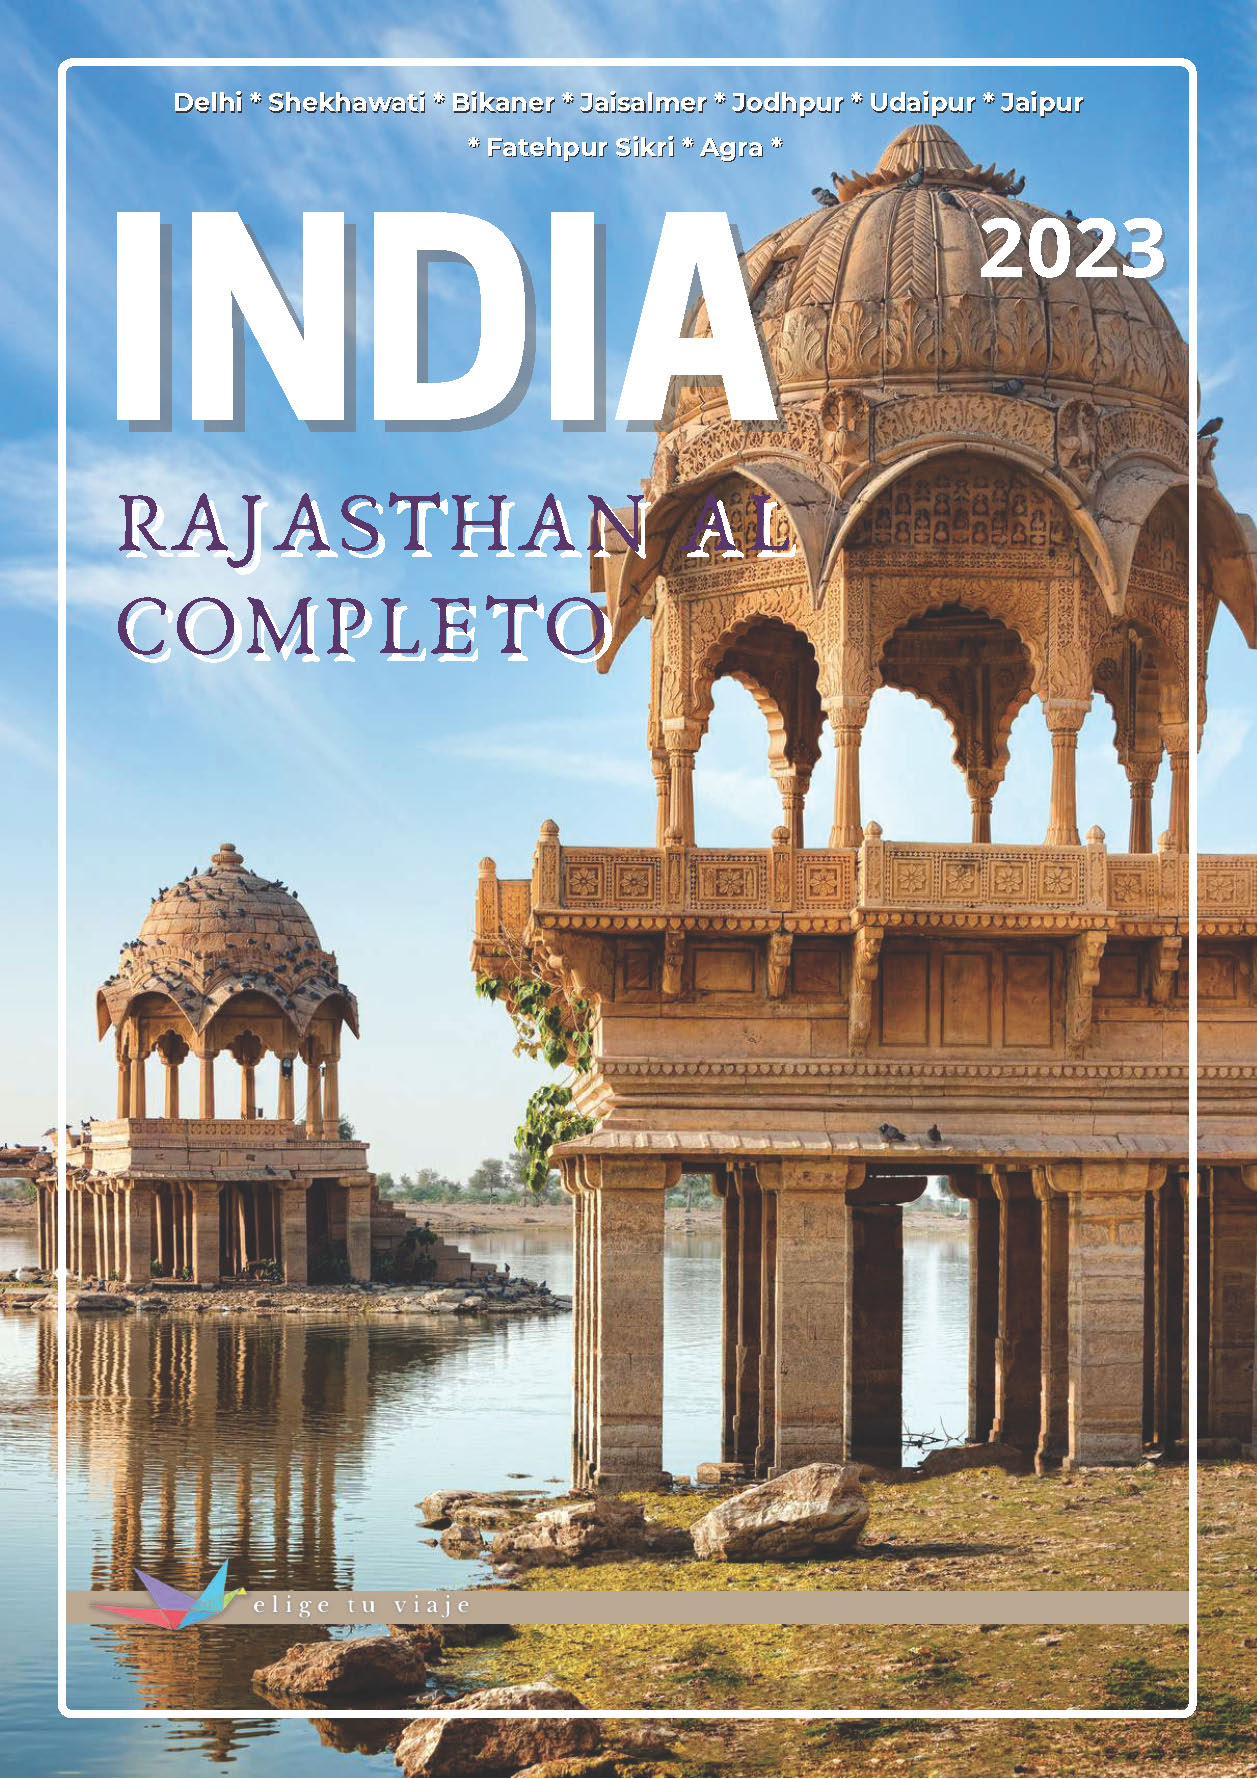 Oferta Elige tu Viaje circuito India Rajasthan al completo 15 dias salidas desde Madrid Abril a Septiembre 2023 vuelos Ita Airways